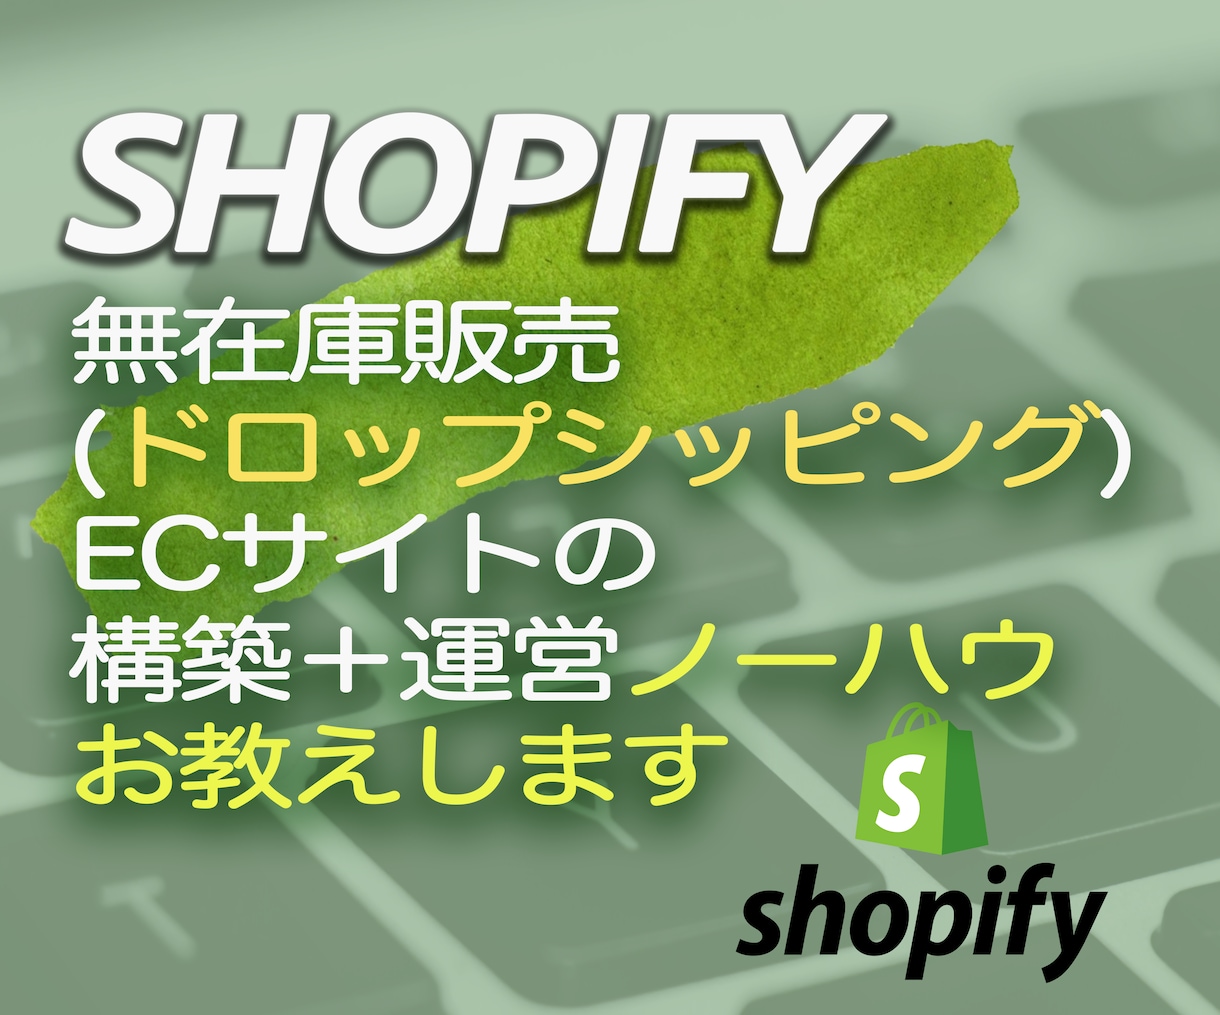 Shopify無在庫ECサイトの始め方お教えします ★1時間に凝縮、ドロップシッピングサイト構築の全て イメージ1